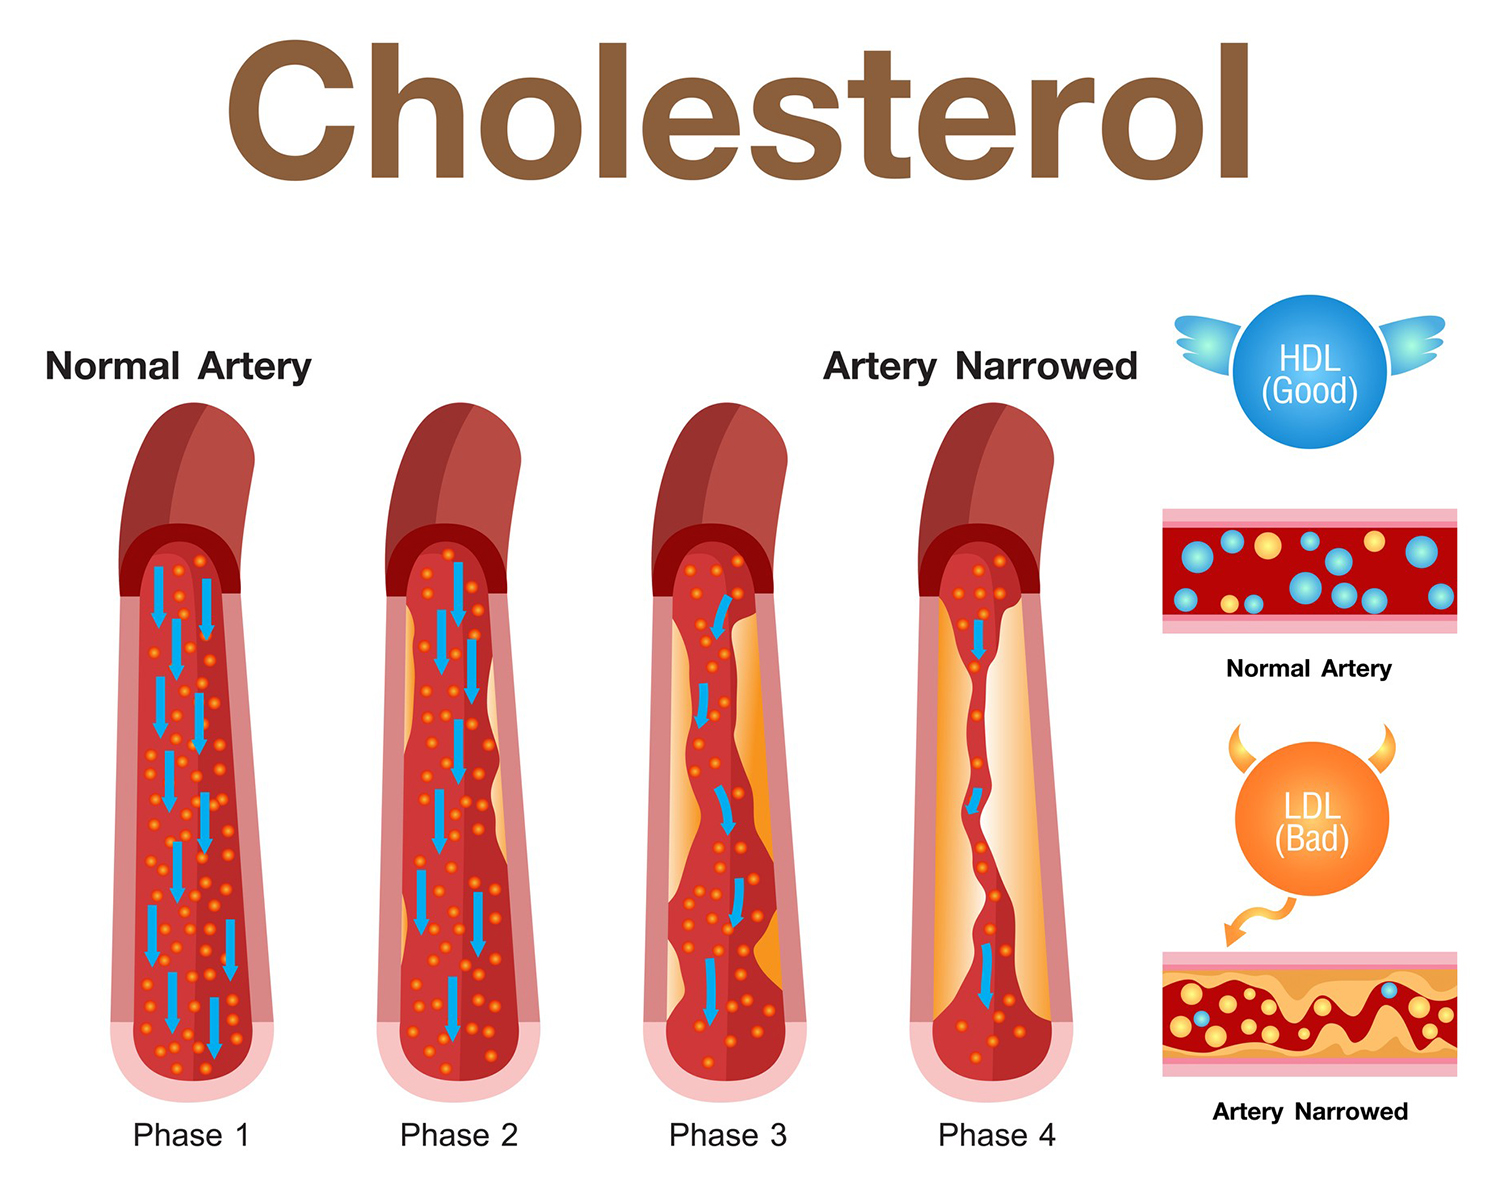 Cetosis y colesterol